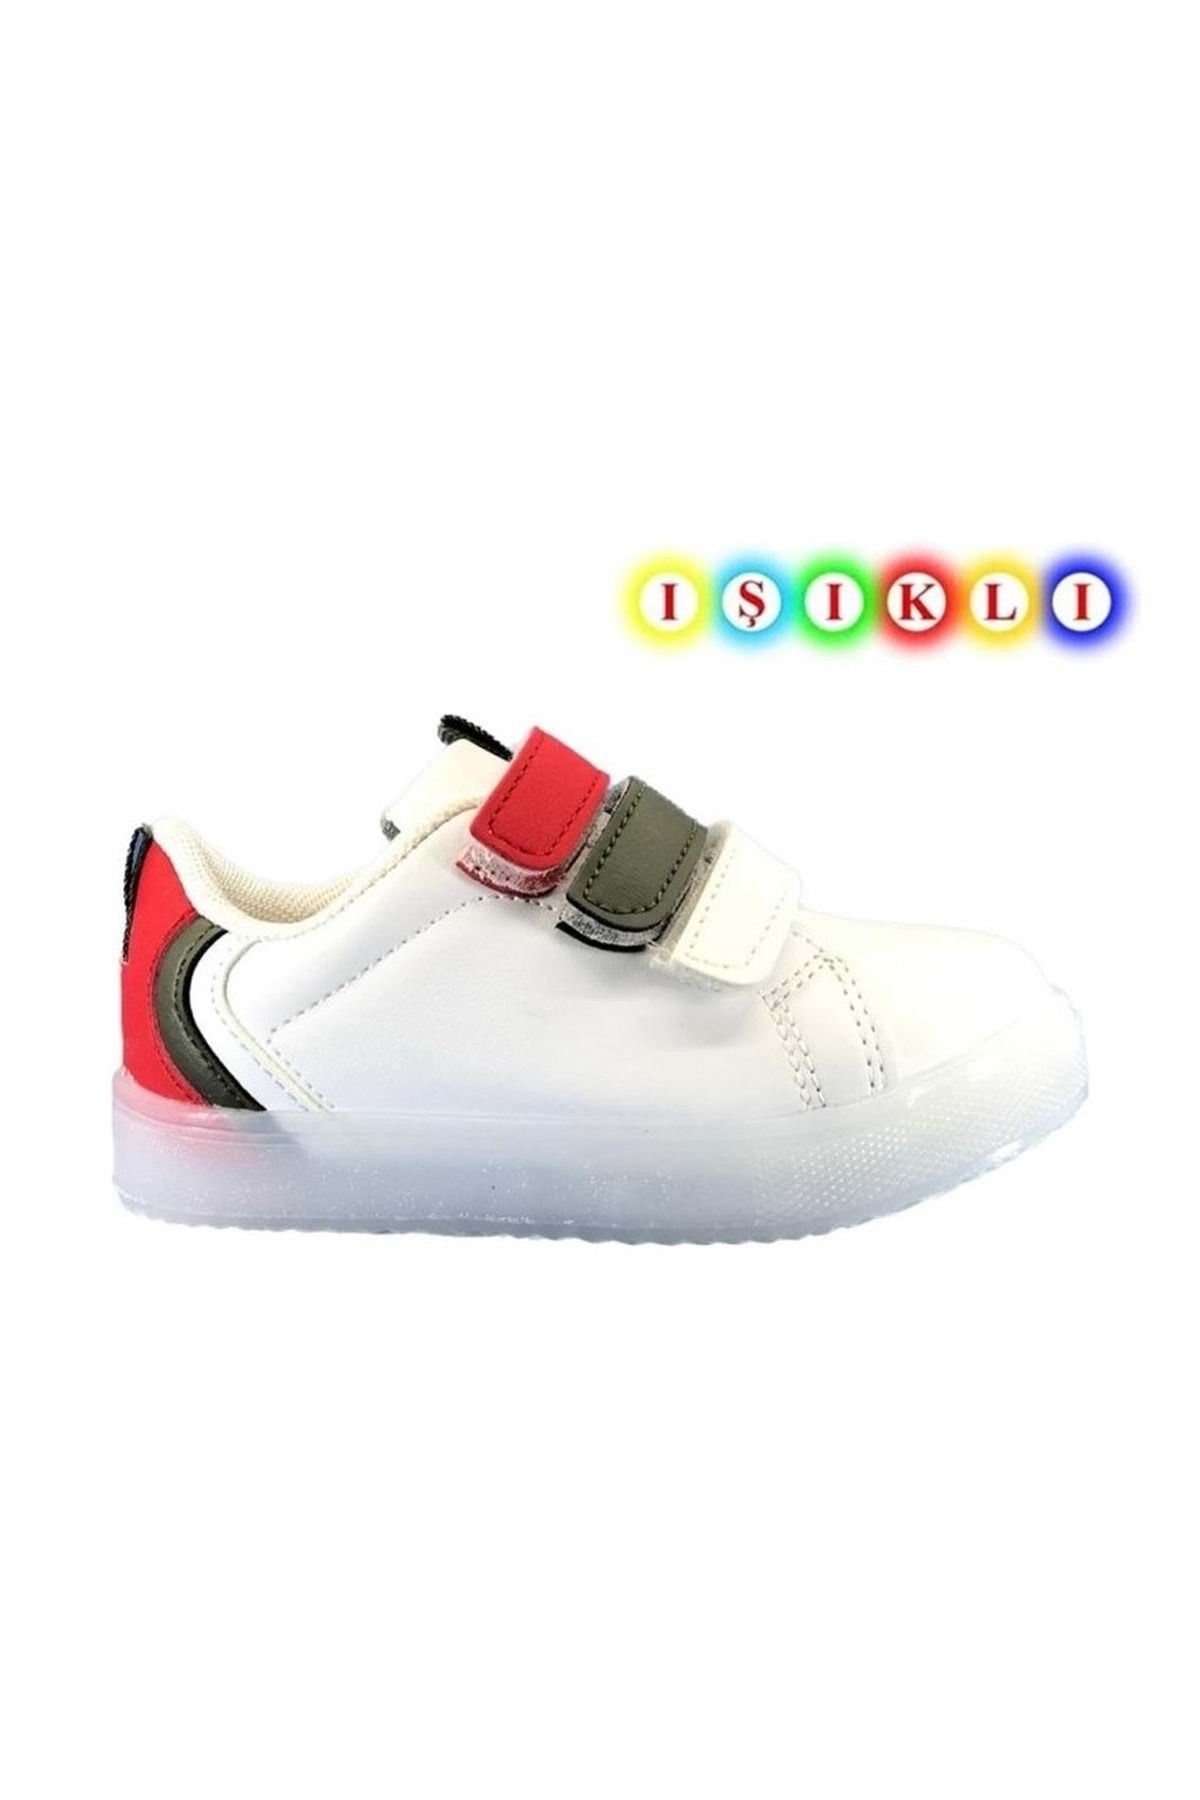 KOCAMANLAR Cool Kids Mami-sun Işıklı Sneaker Çocuk Spor Ayakkabı Haki